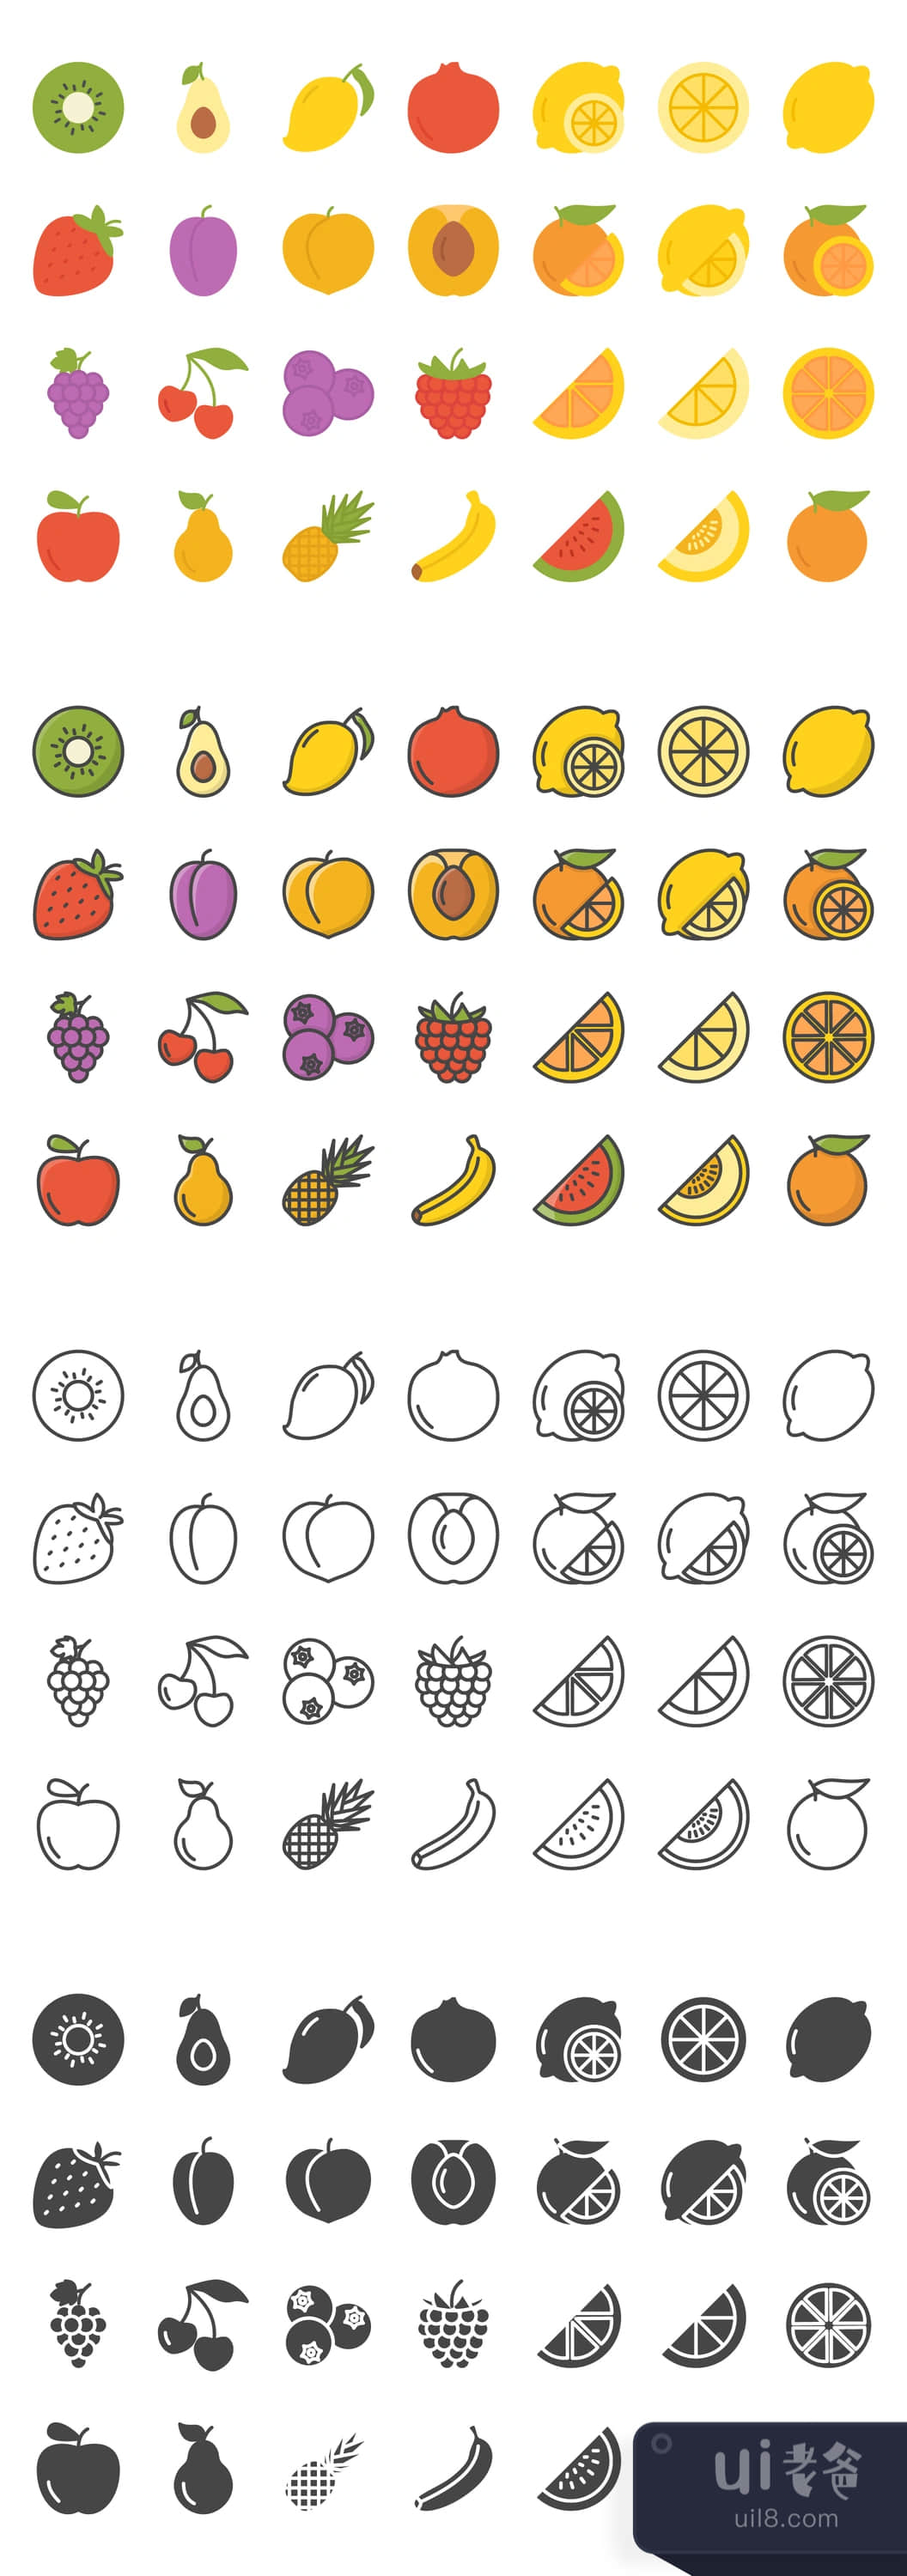 112个水果图标 (112 Fruits Icons)插图